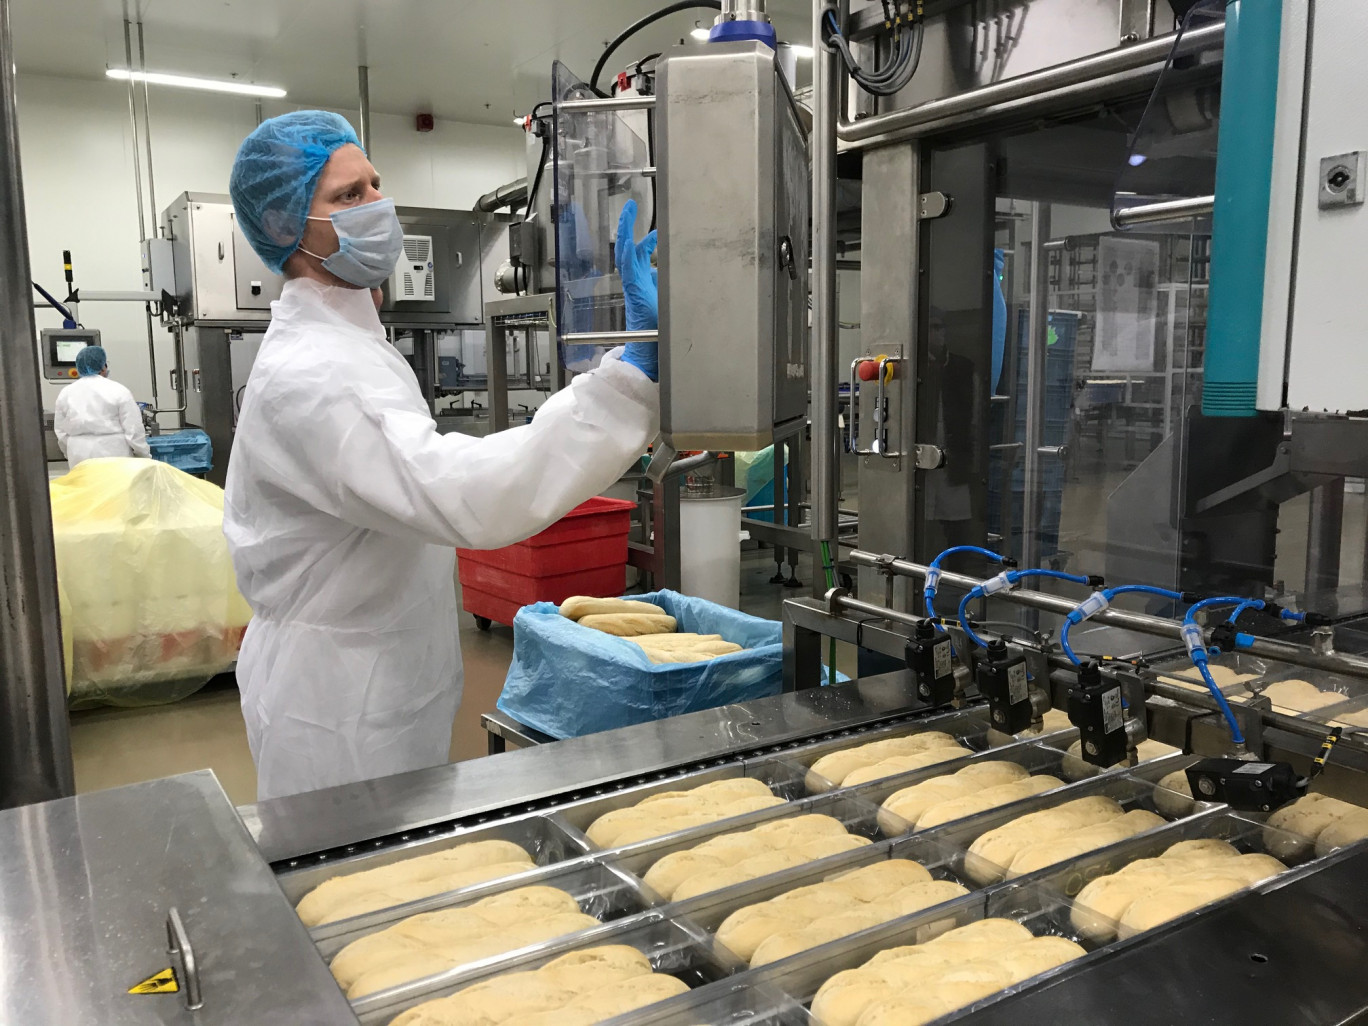 L'an passé, plus de 170 000 tonnes de pain sont sorties des fours de Menissez. Dans trois ans, il y aura 100 000 tonnes supplémentaires.